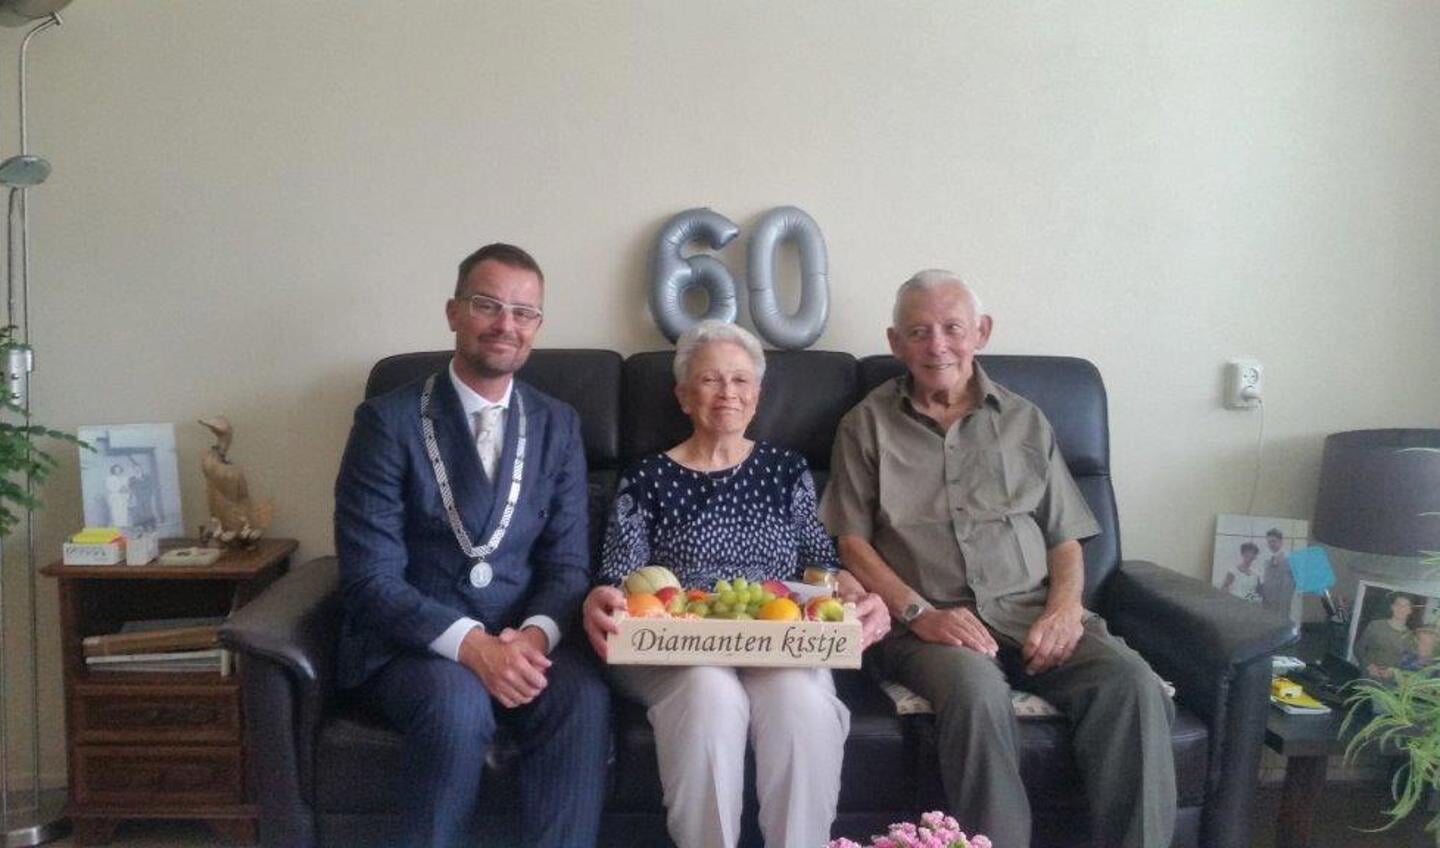 Op 30 augustus was het echtpaar Werner 60 jaar getrouwd. Locoburgemeester De Prez kwam langs met de felicitaties.